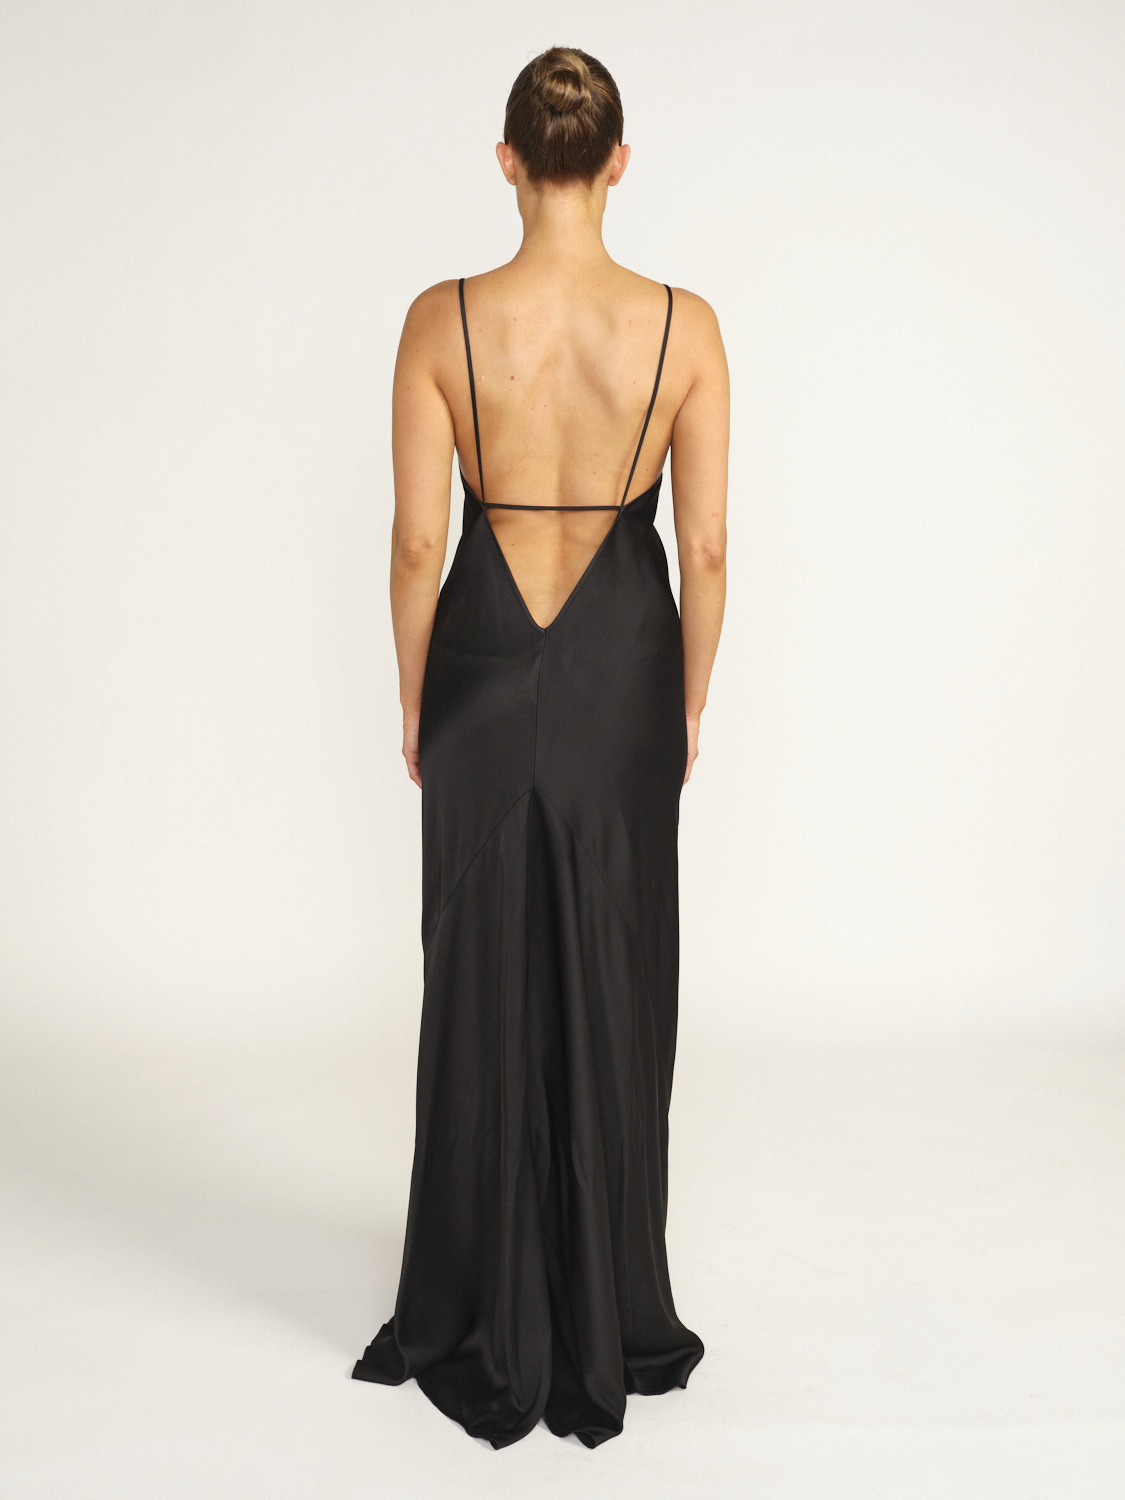 Victoria Beckham Floor Length Cami Dress – Bodenlanges Kleid aus fließendem Stoff schwarz 38